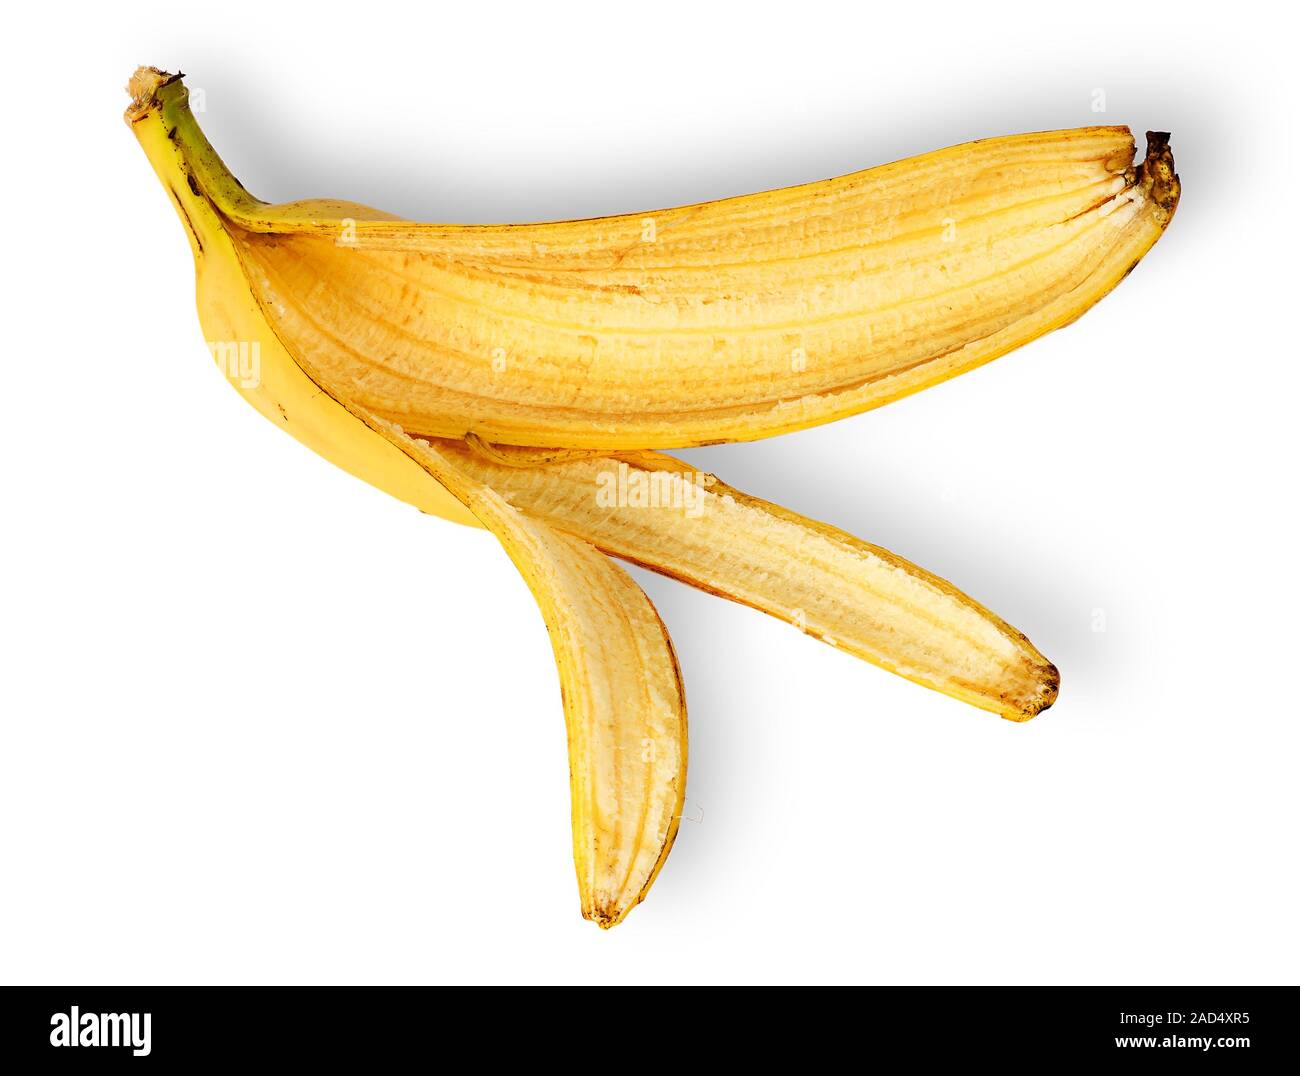 Banana skin deployed horizontally Stock Photo